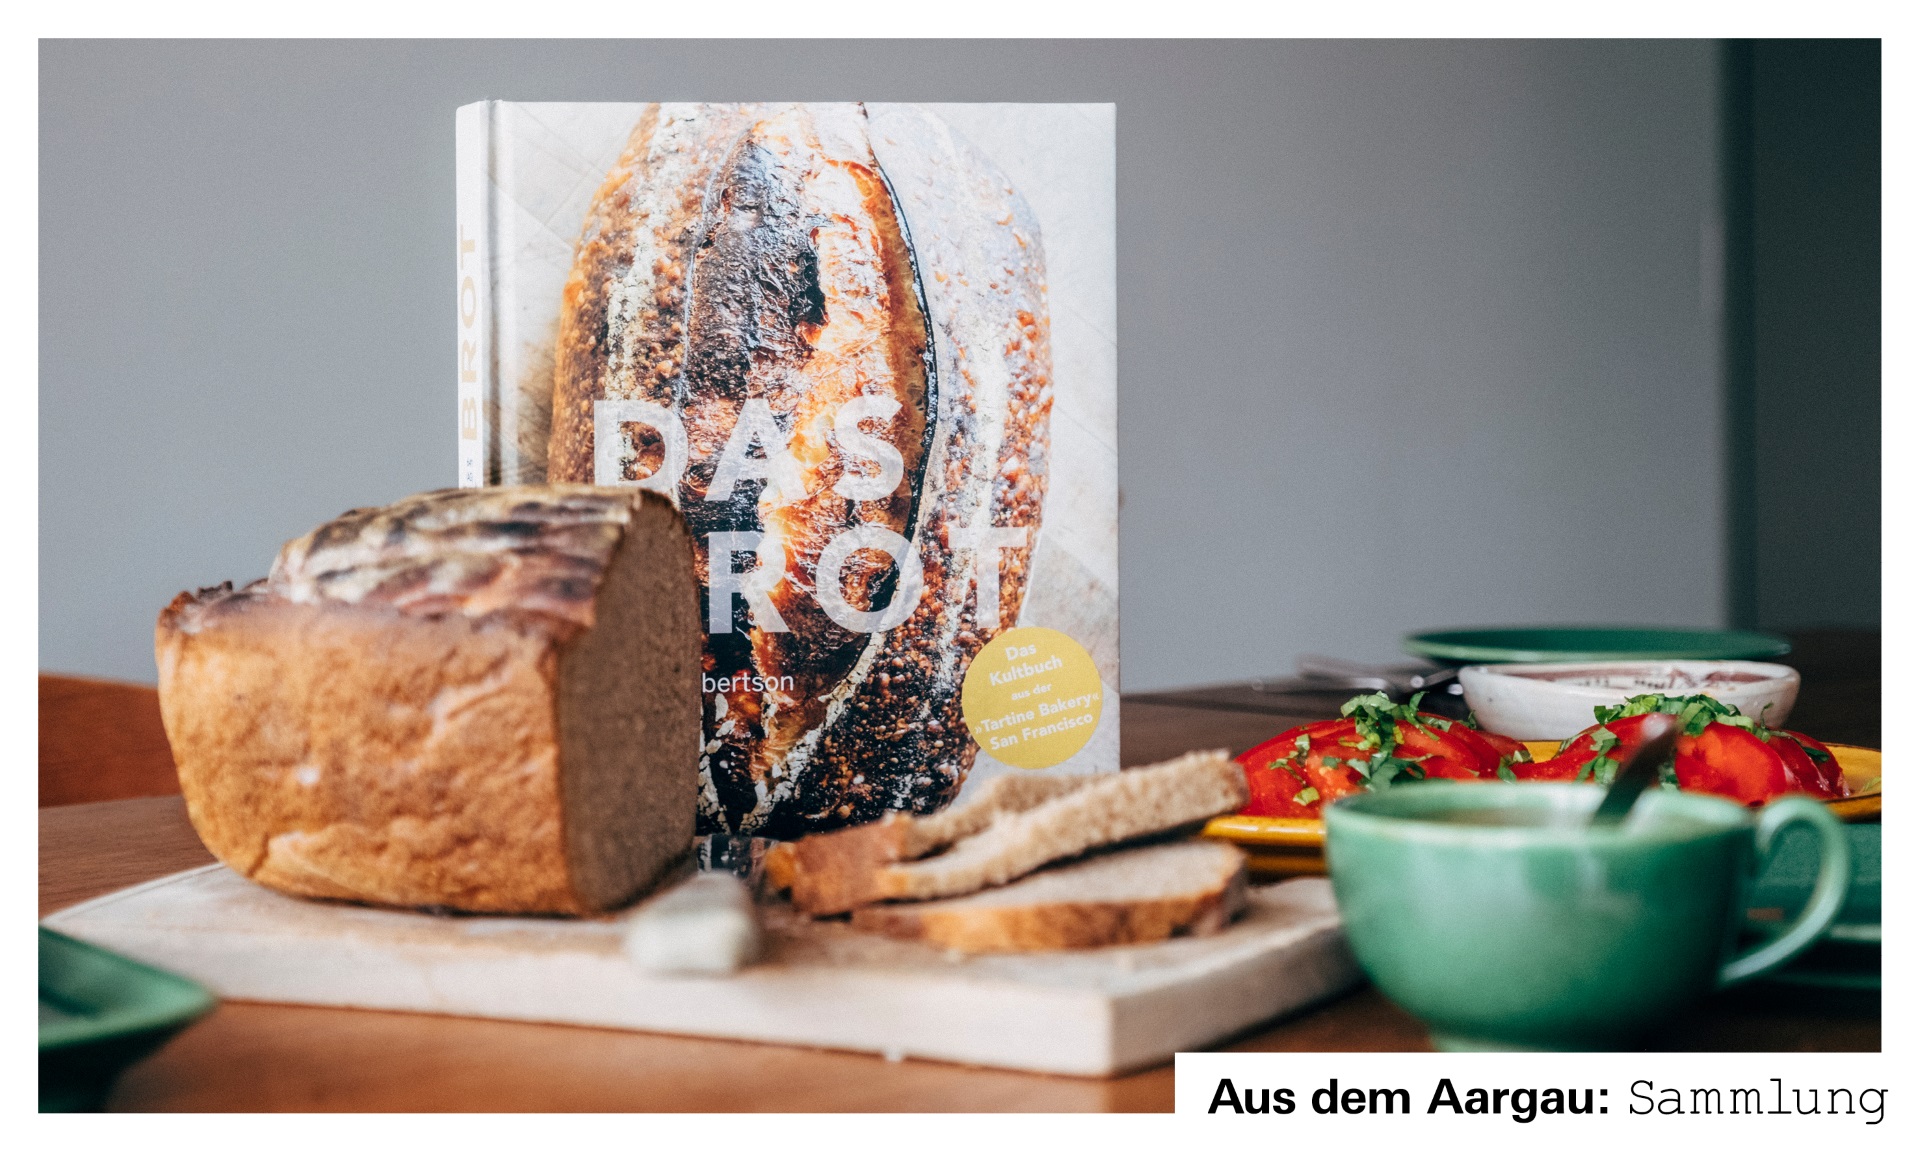 Foto mit Kochbuch, Brot und Beilagen